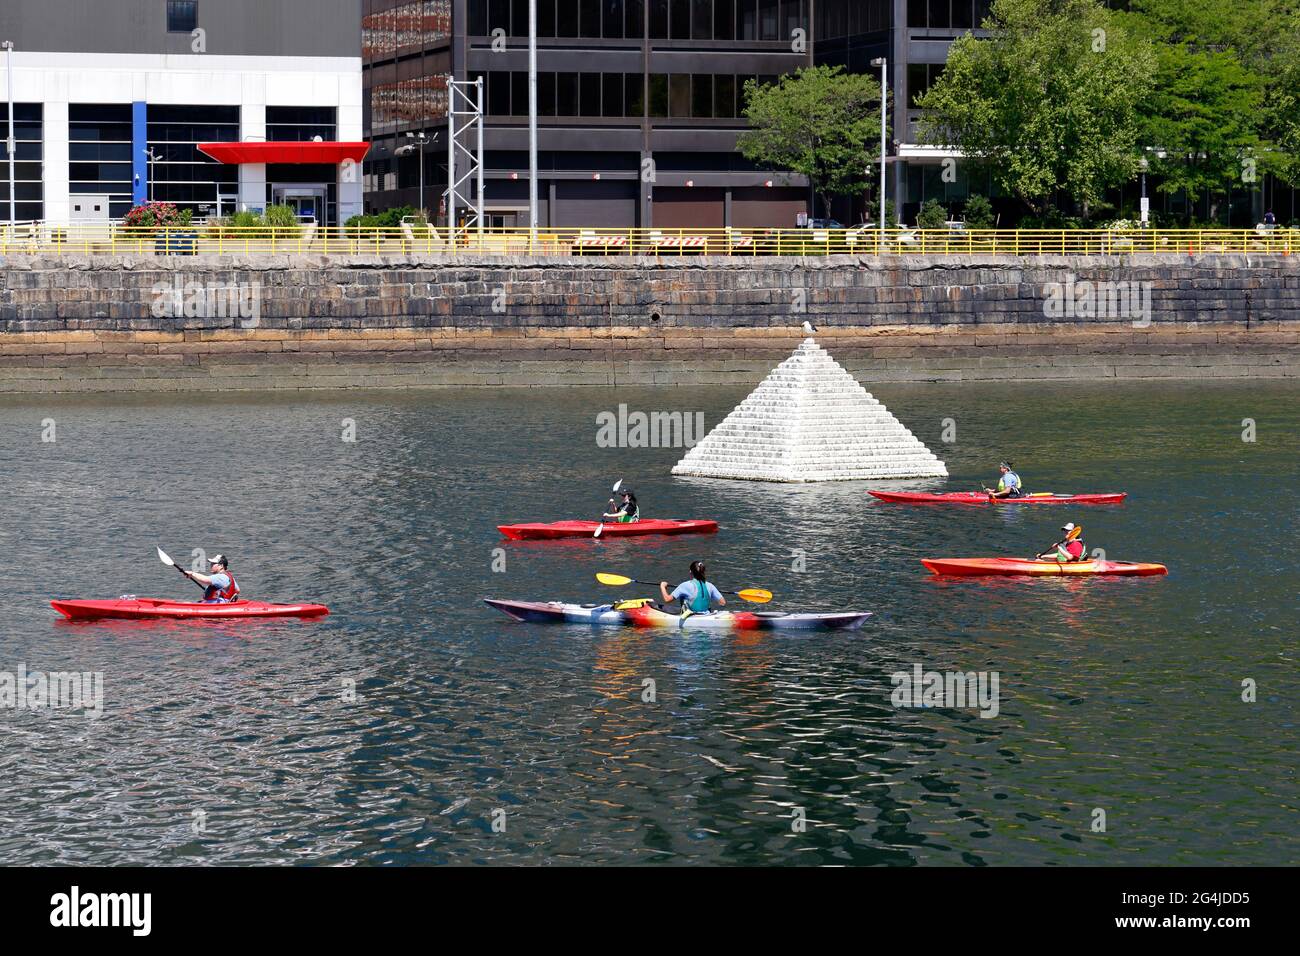 Kayakistes dans le canal de fort point à côté de la pyramide flottante PYR 2014 à Boston, ma. Accès à l'eau par la jetée de fort point, un kayak public la Banque D'Images